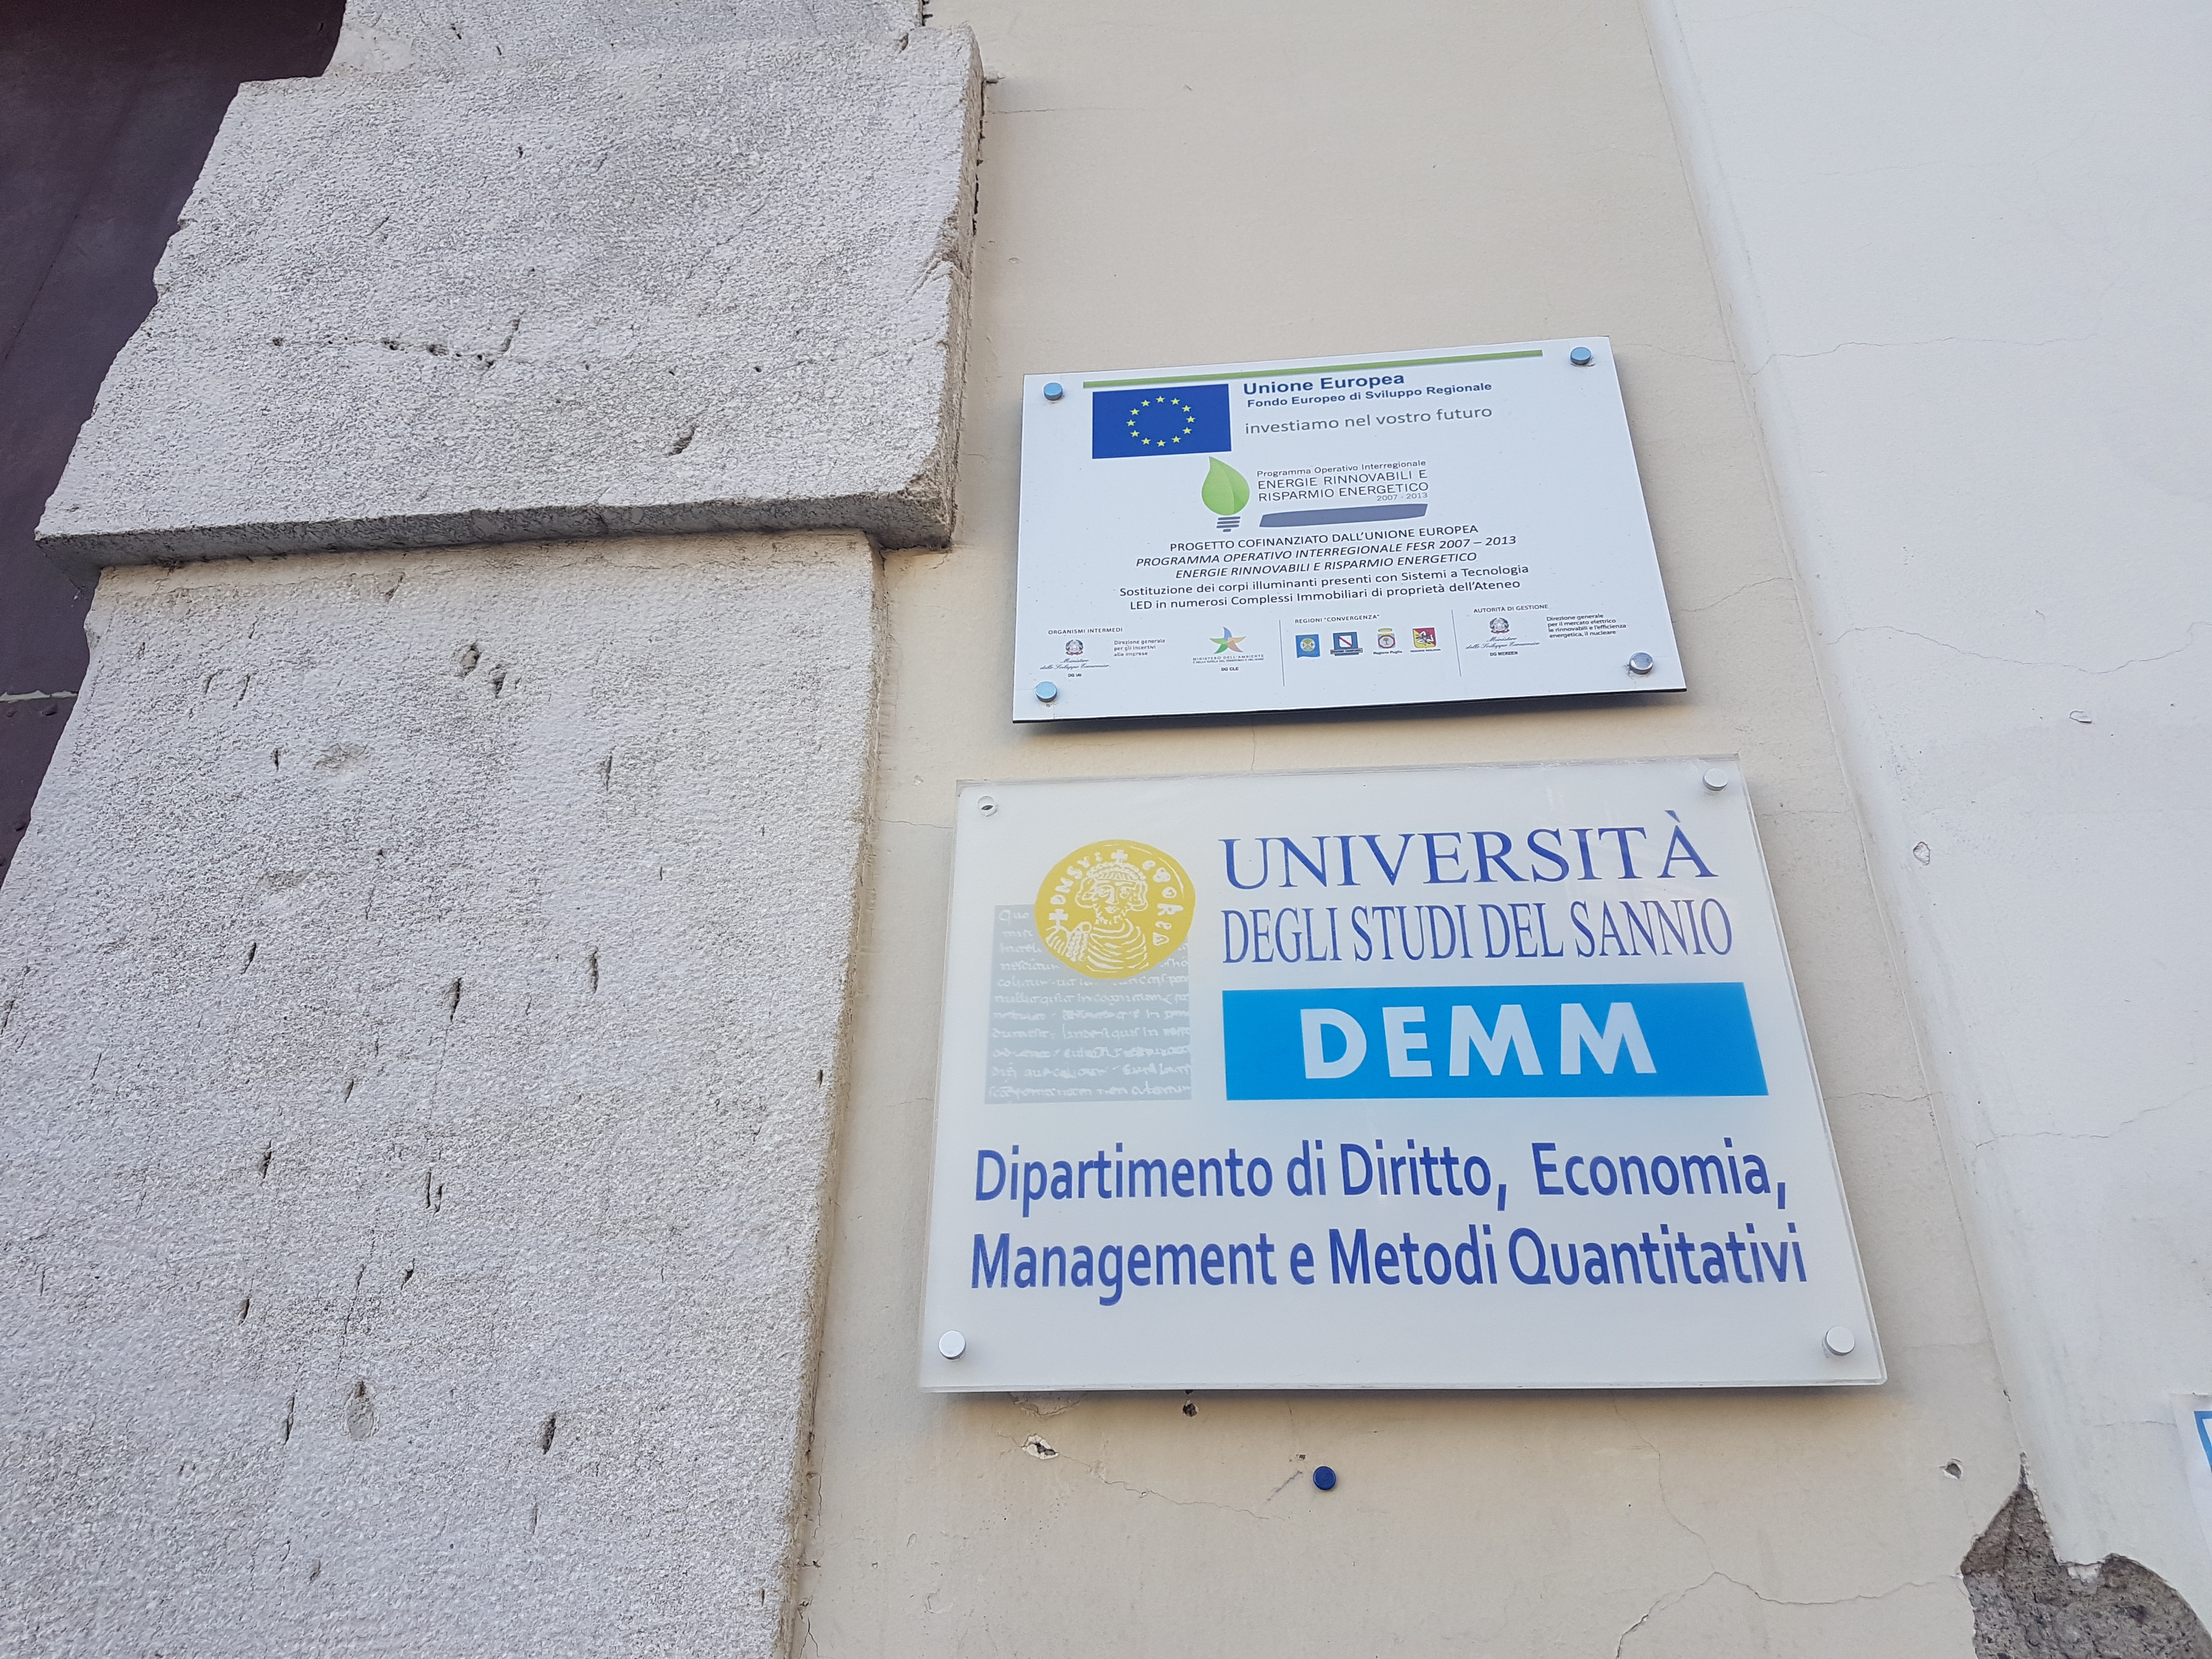 Benevento| Al Demm incontro su “Modello di sviluppo e società”